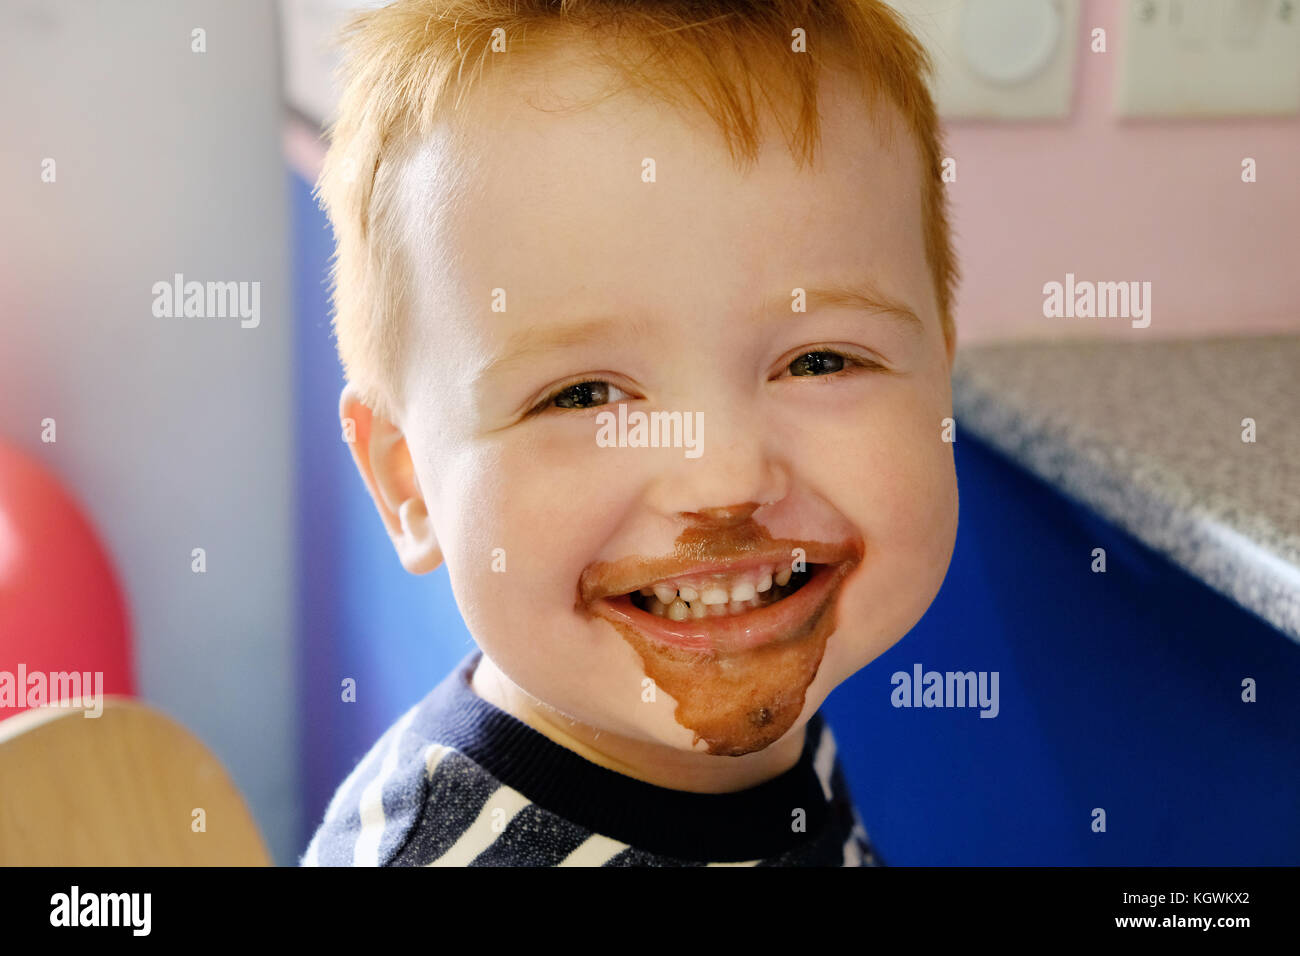 Eine junge Happy Boy, breit lächelnd, sein Gesicht in Schokolade Eis gerade gegessen und eine Schokolade Eis behandeln Stockfoto